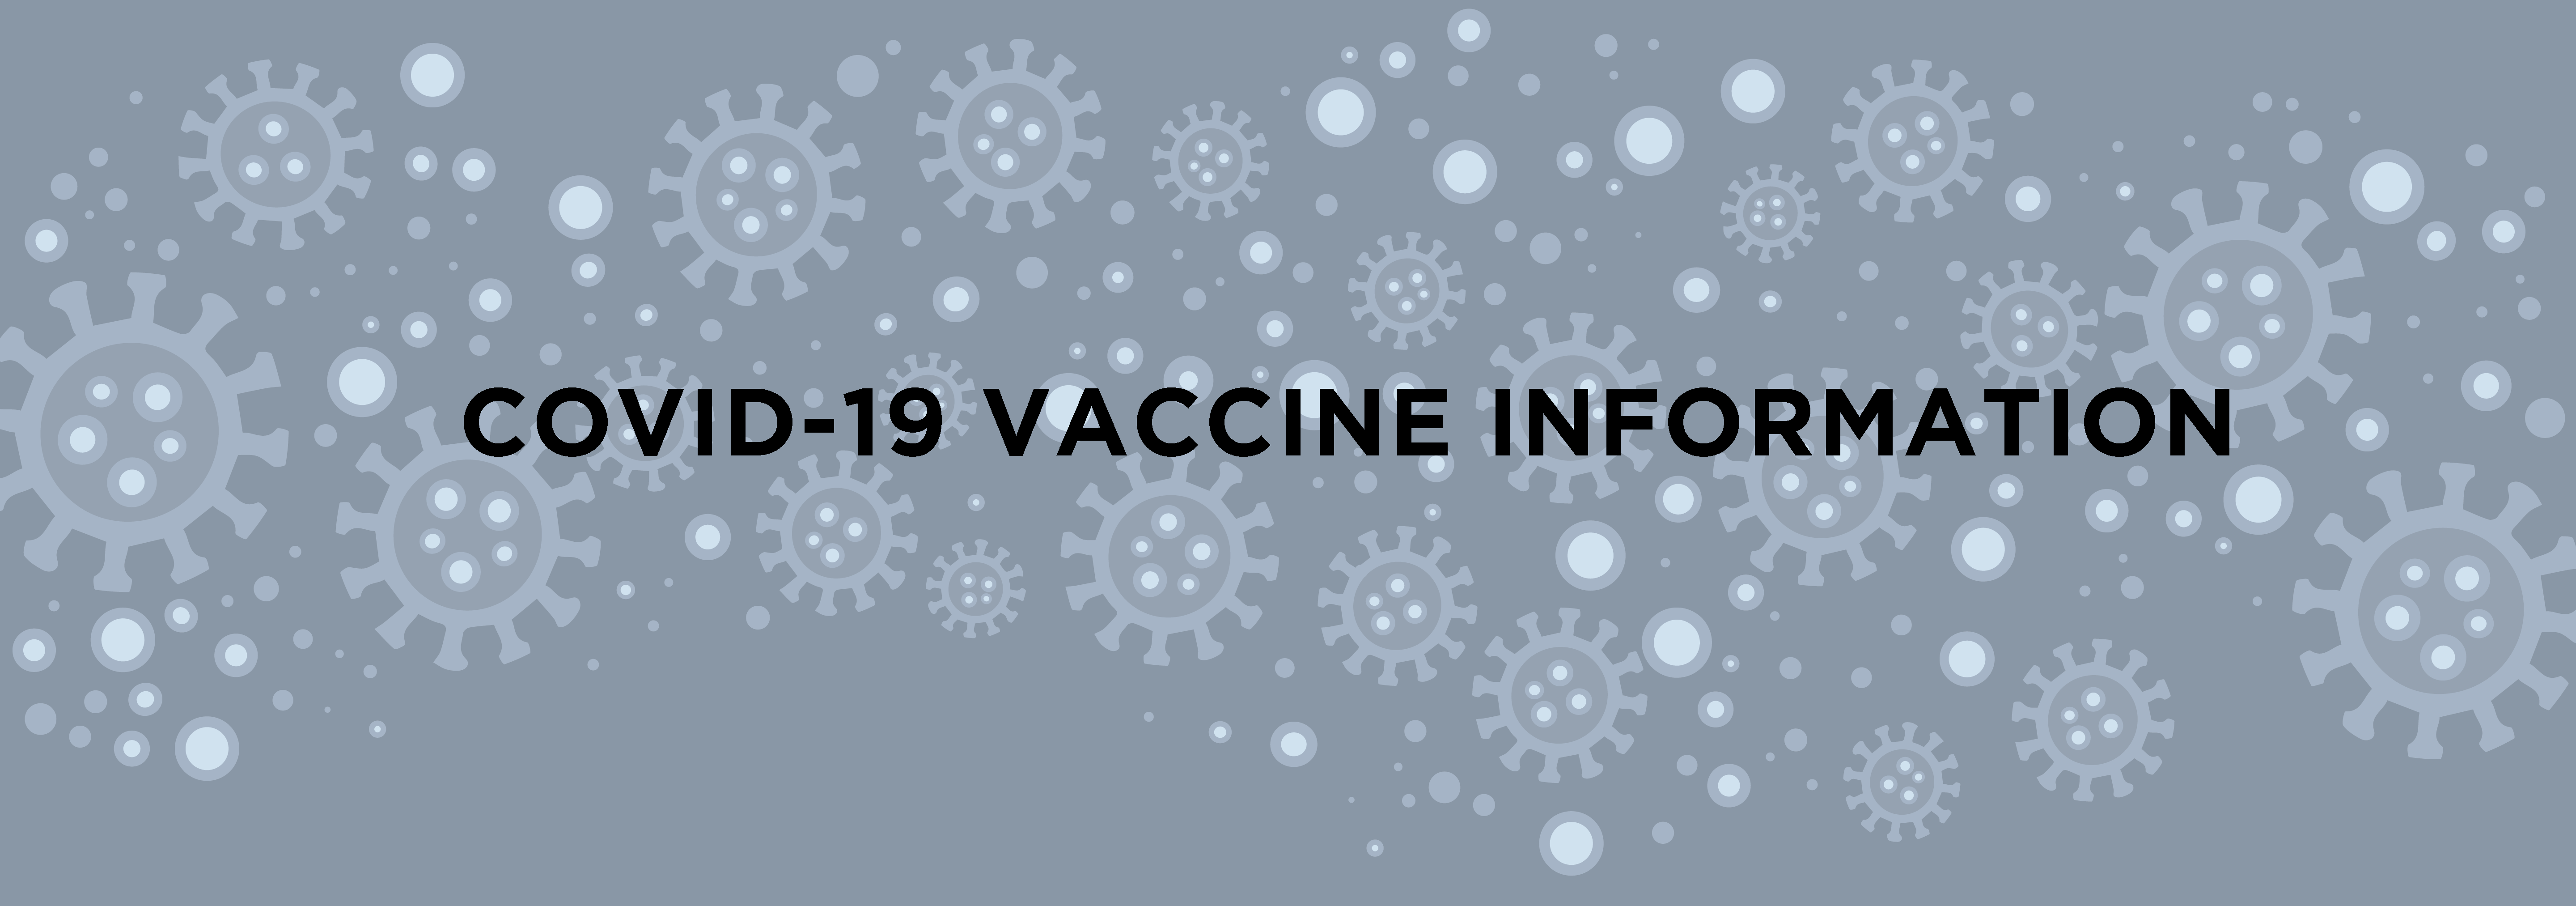 COVID Vaccine Header - COVID-19 Vaccine Information